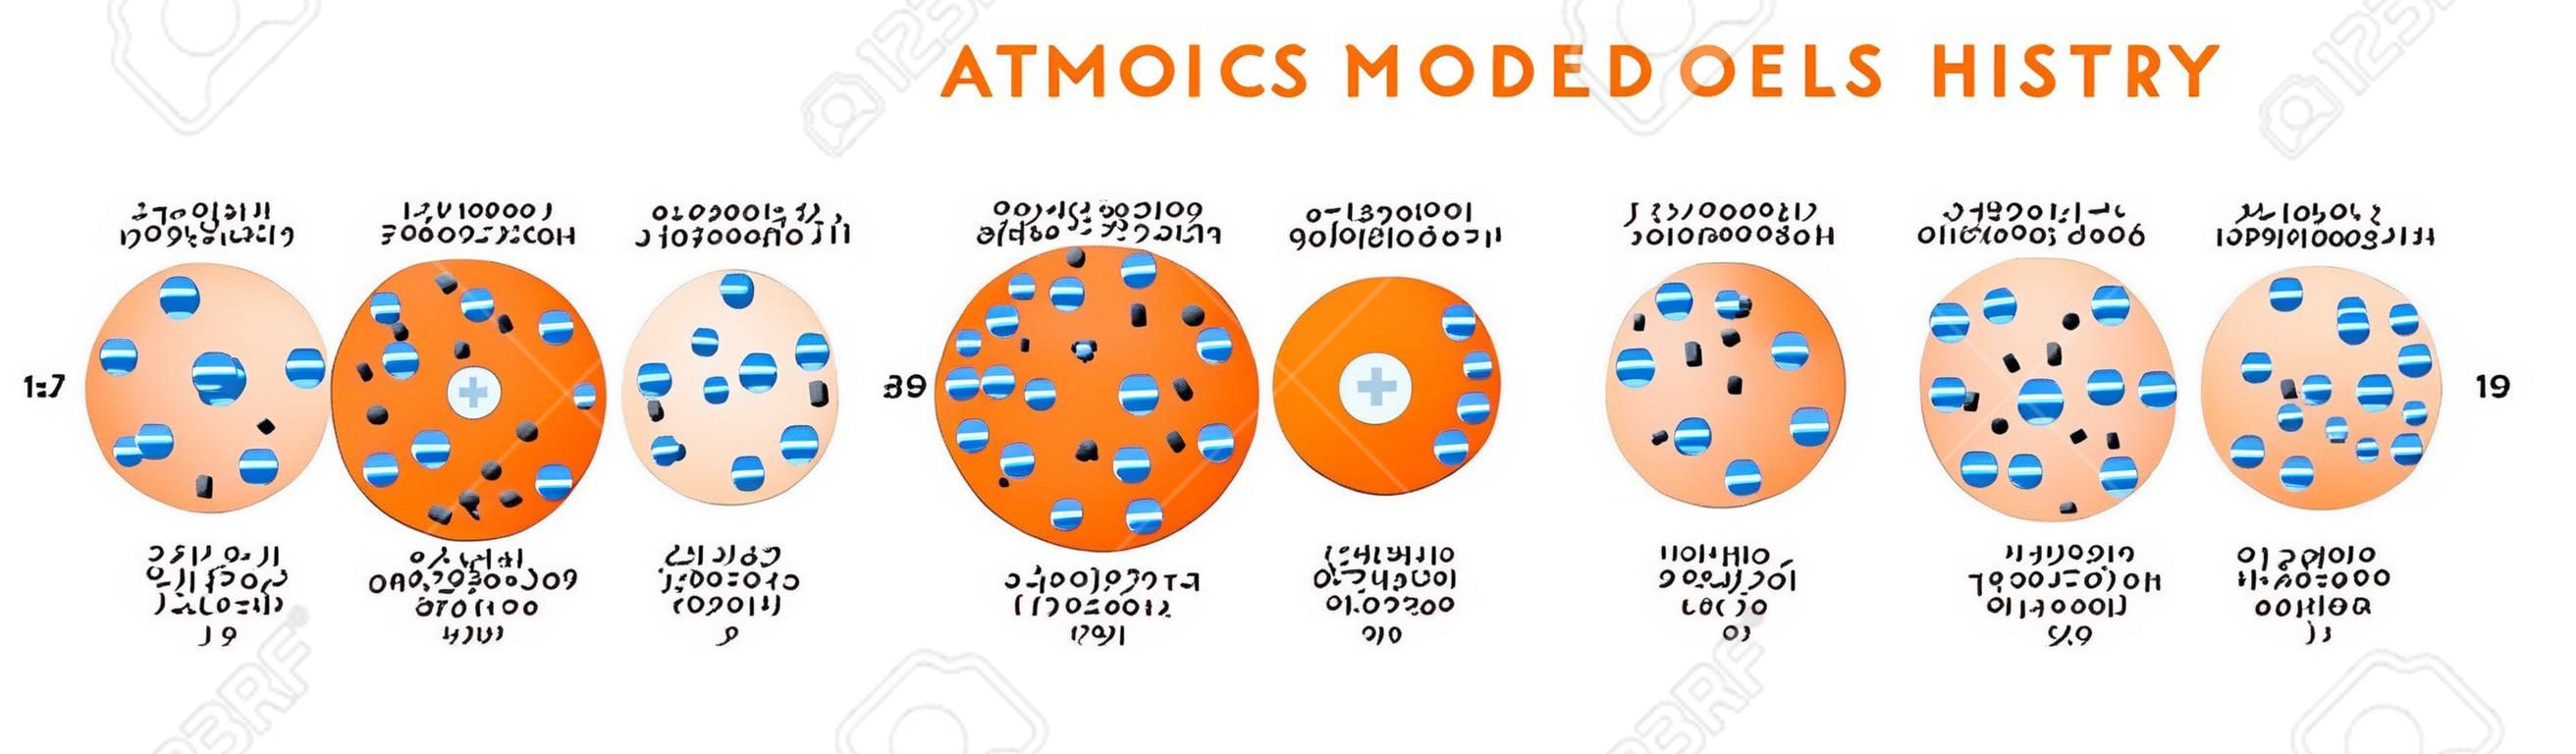 Schemat infograficzny historii modeli atomowych, w tym democritus dalton tomson rutherford bohr schrodinger struktury atomowe dla chemii nauka edukacja plakat wektor